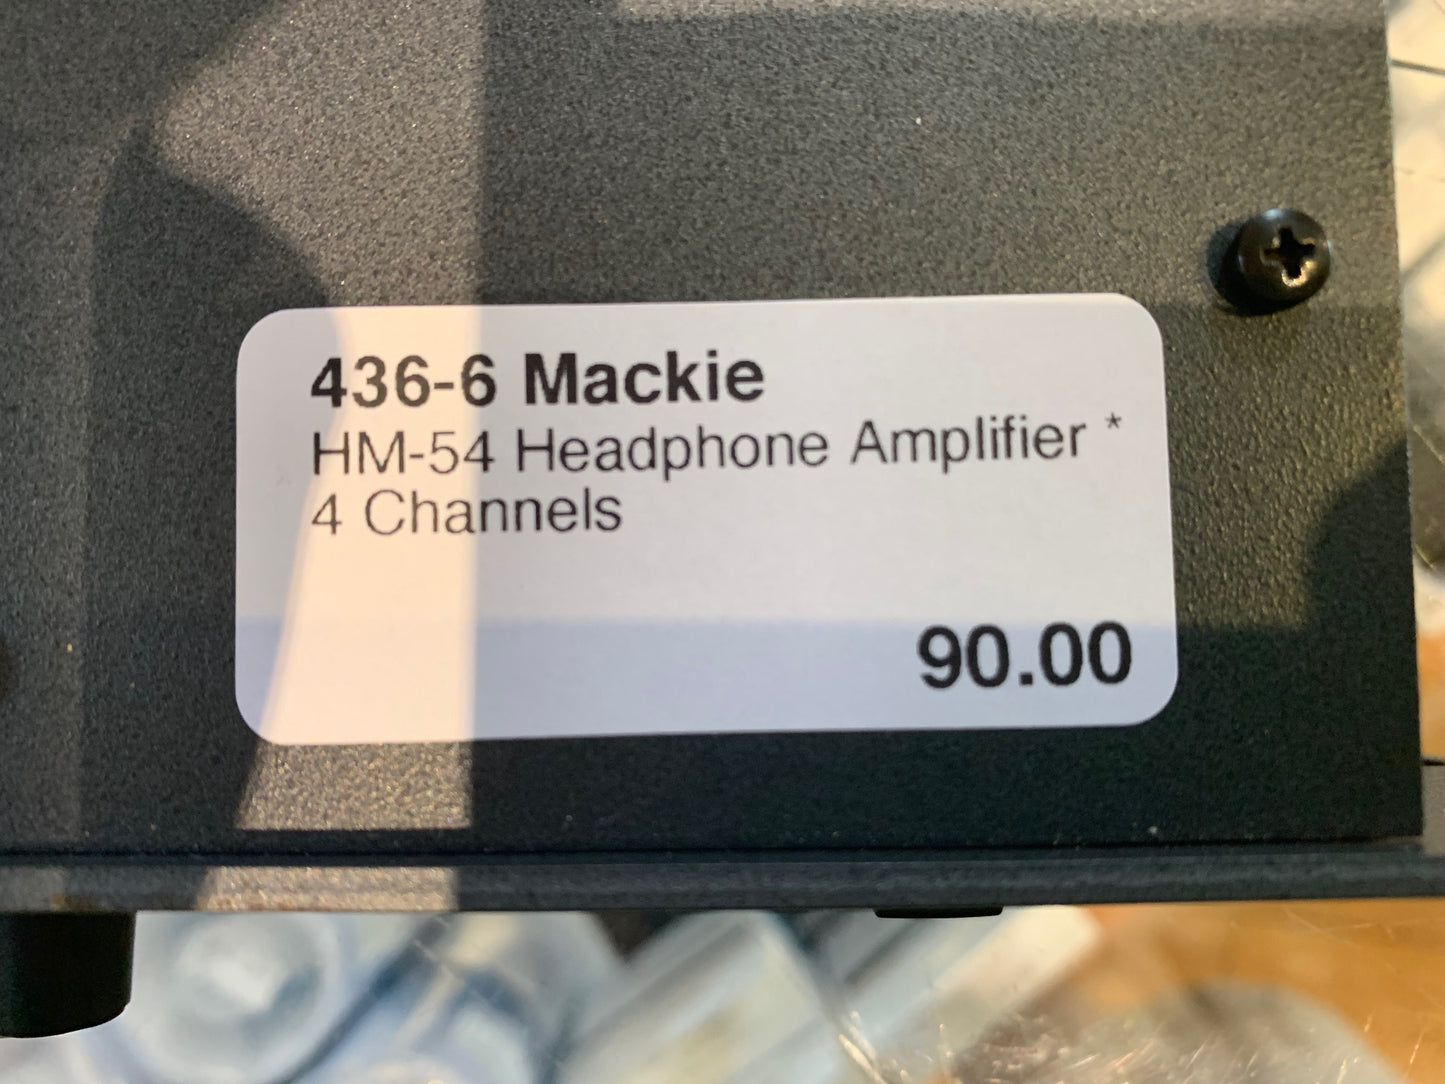 Mackie HM-54 Headphone Amplifier * 4 Channels